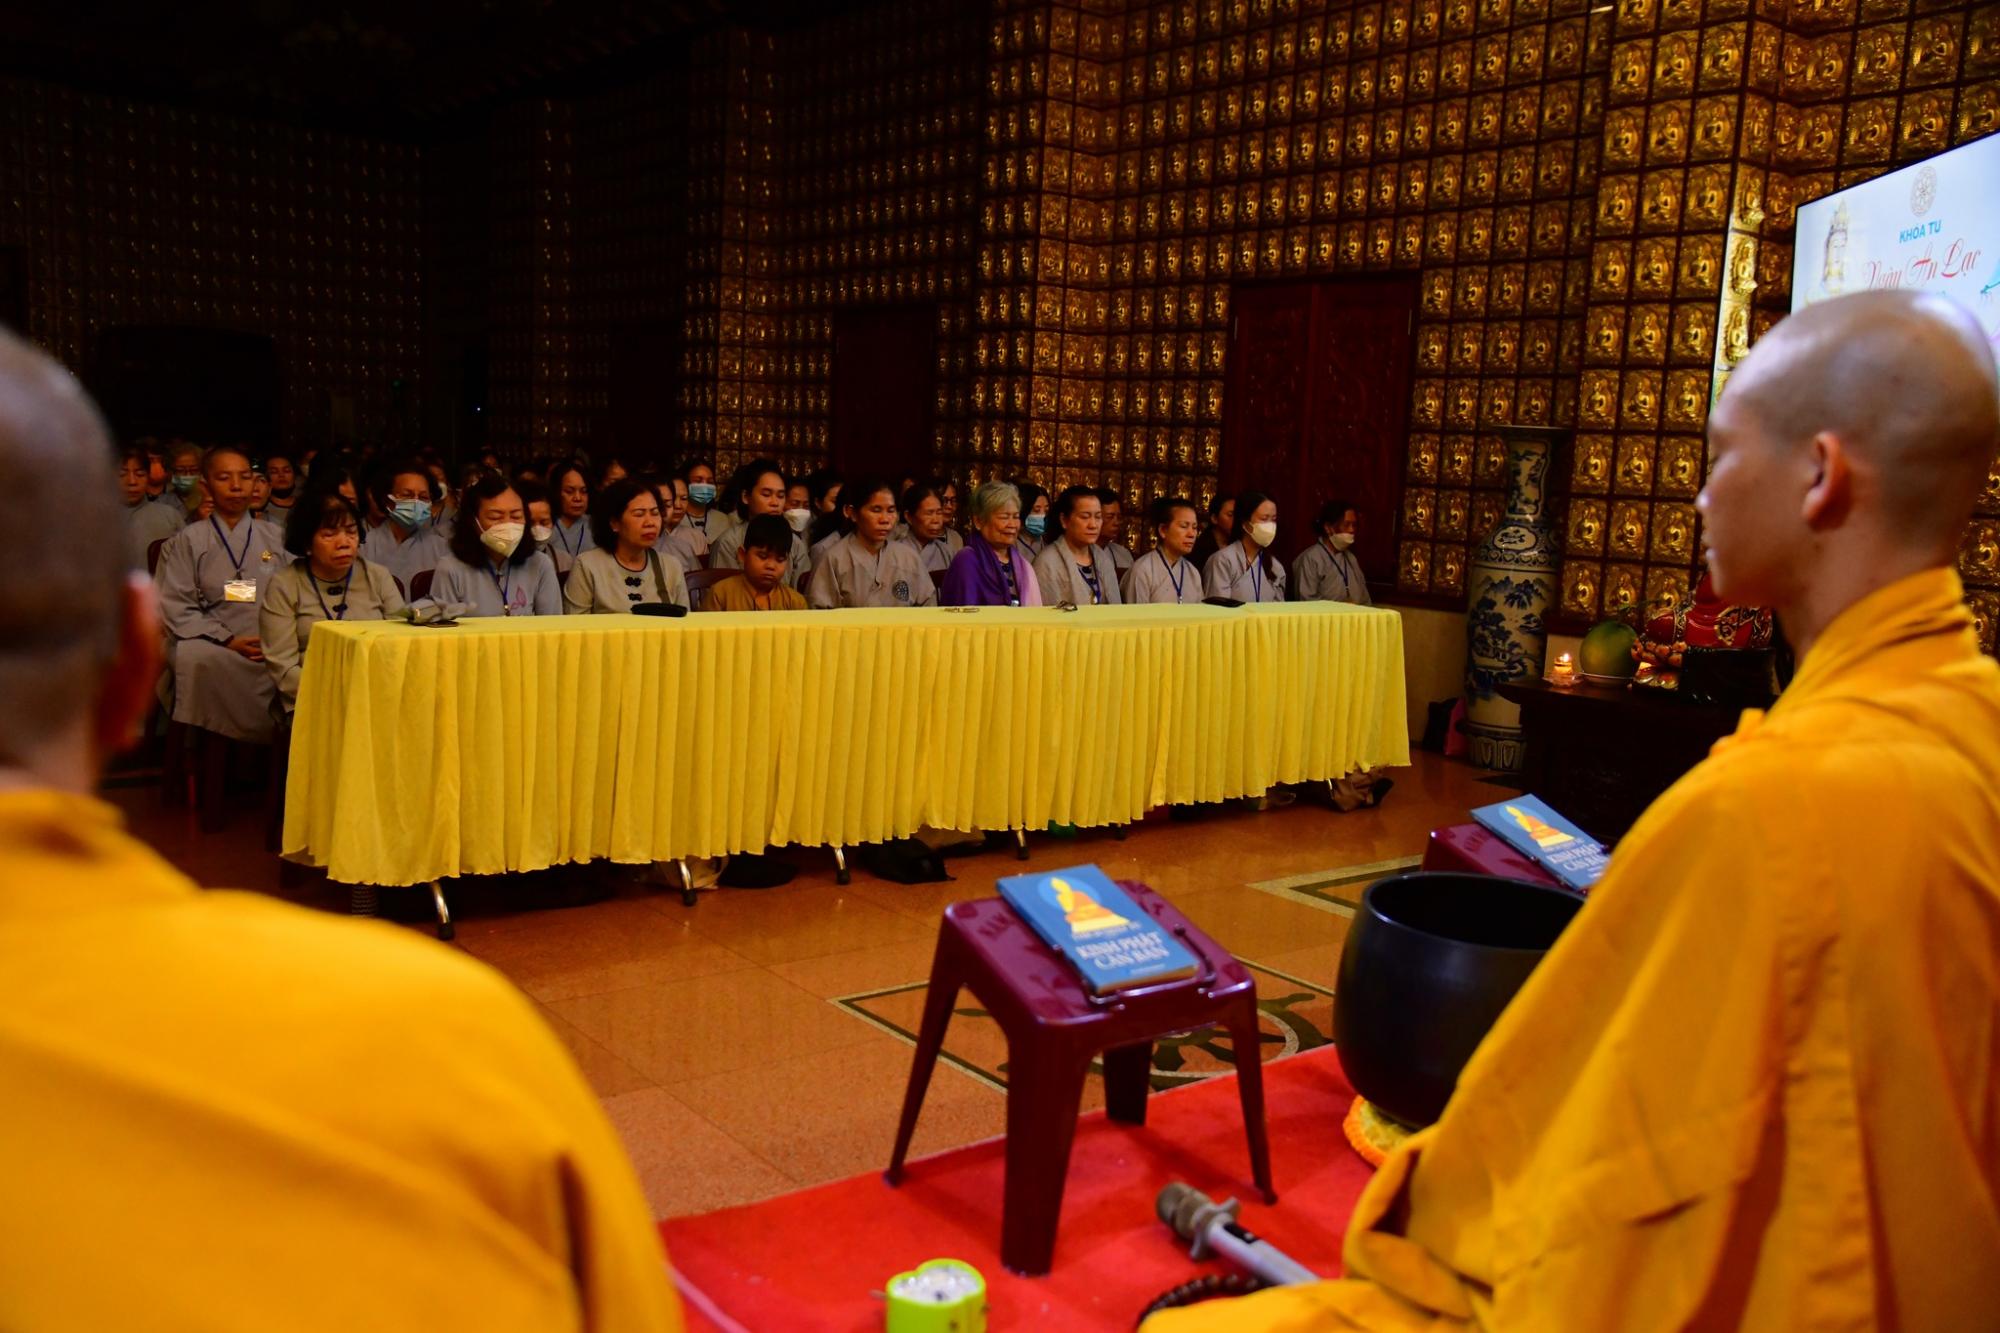 ĐĐ. Hạnh Tuệ thuyết giảng  trong khóa tu NGÀY AN LẠC tại chùa Giác Ngộ